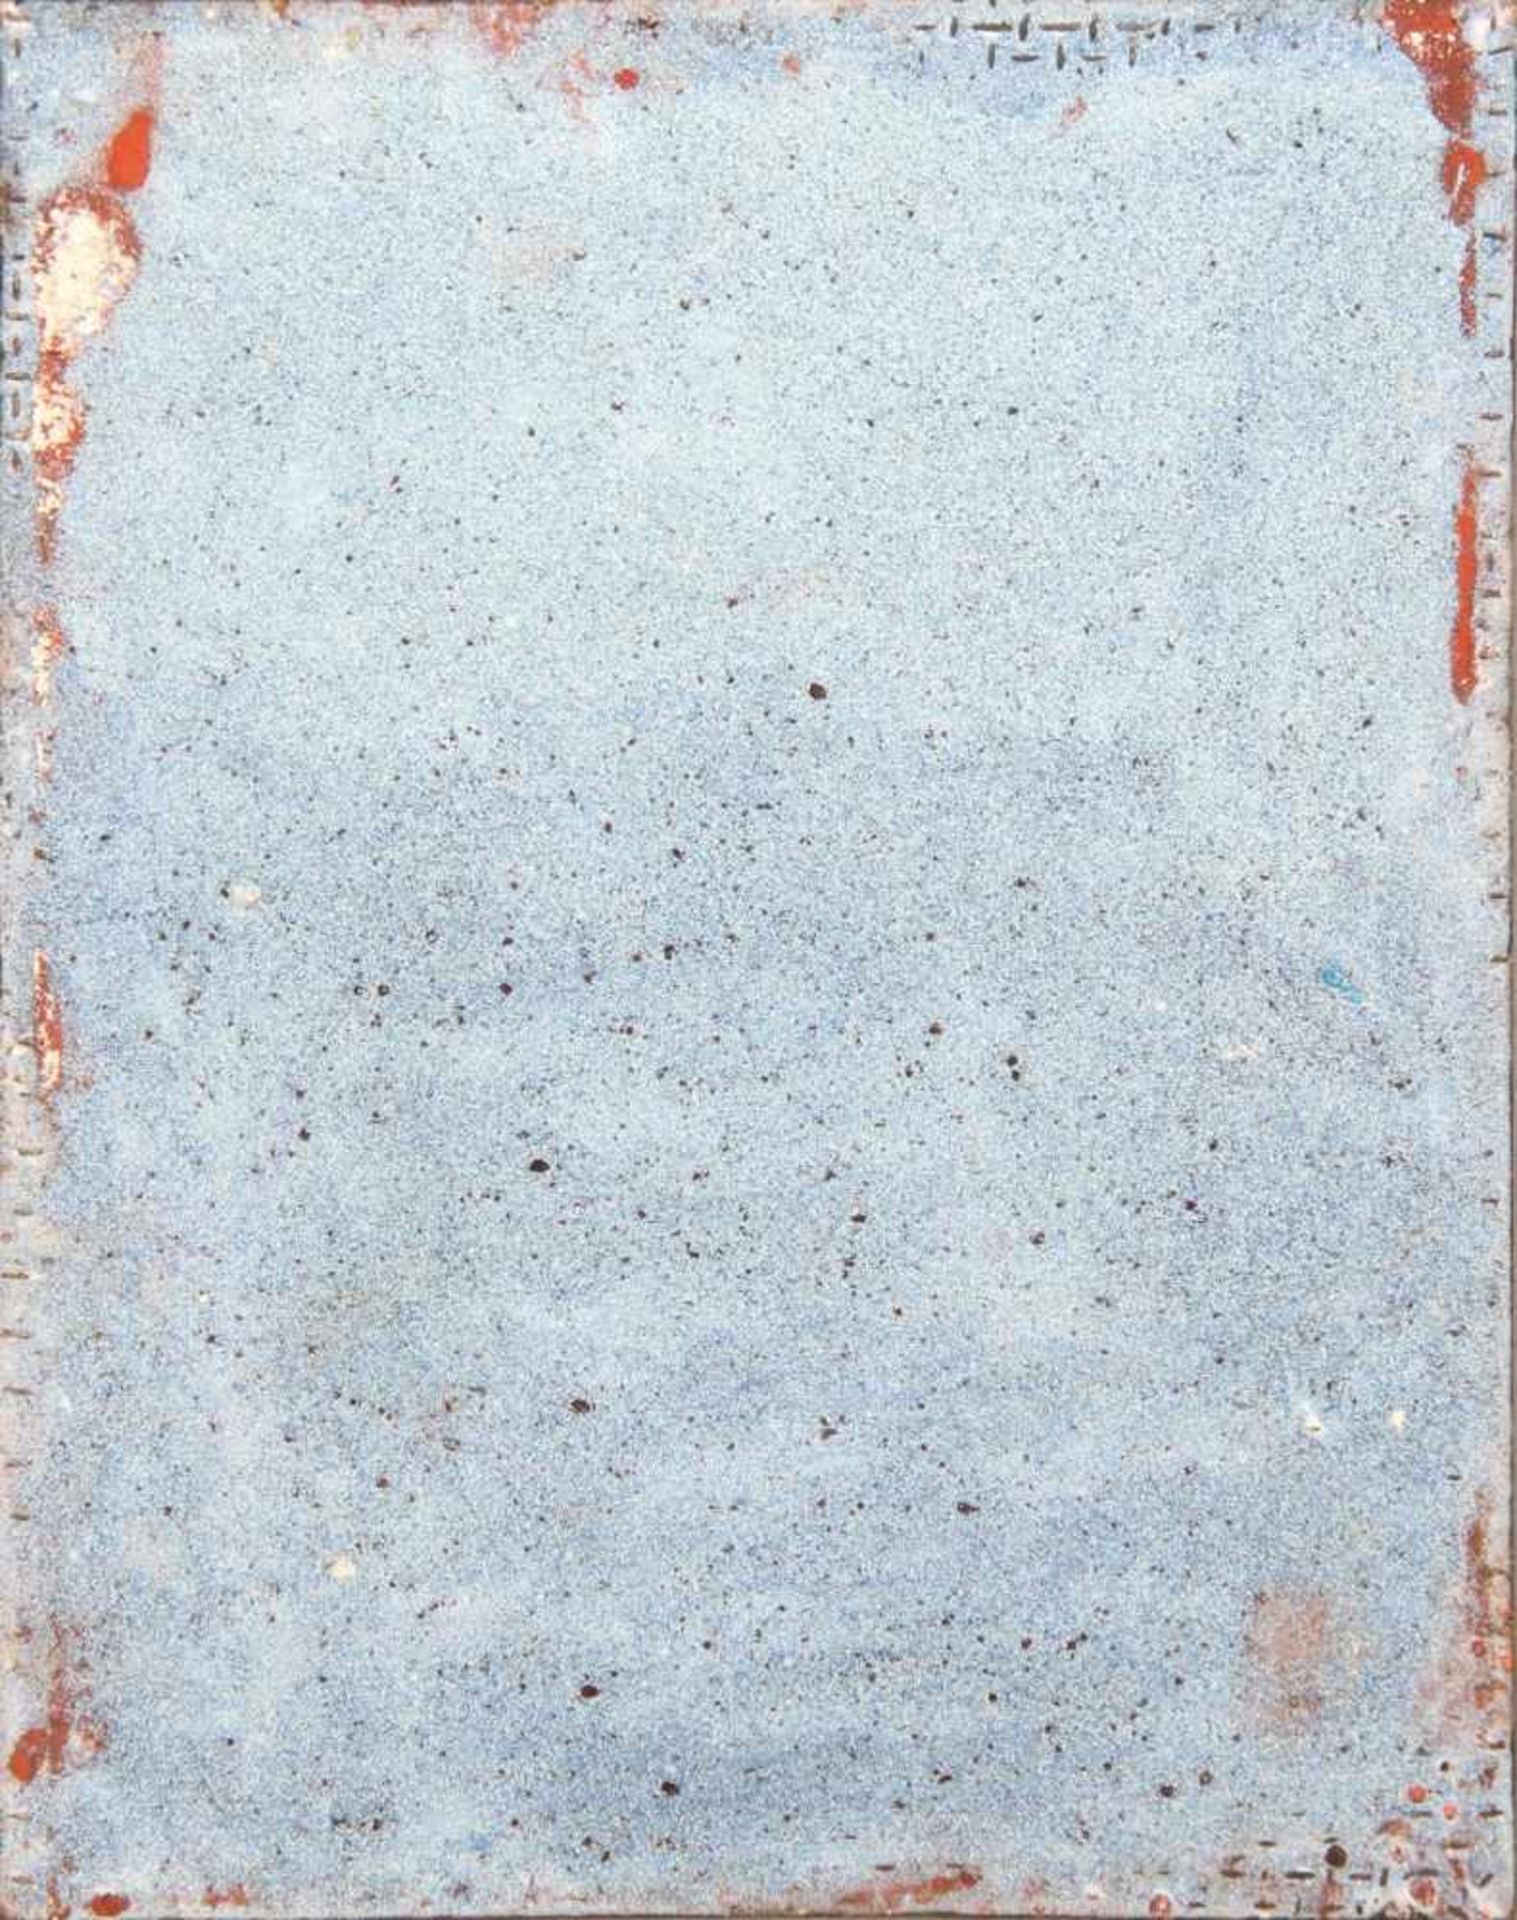 LIMOGES Emaille-Plakette des 18./19. Jahrhundertsfarbige Emaillemalerei auf Blechplatte, ¨Alleg - Bild 2 aus 2